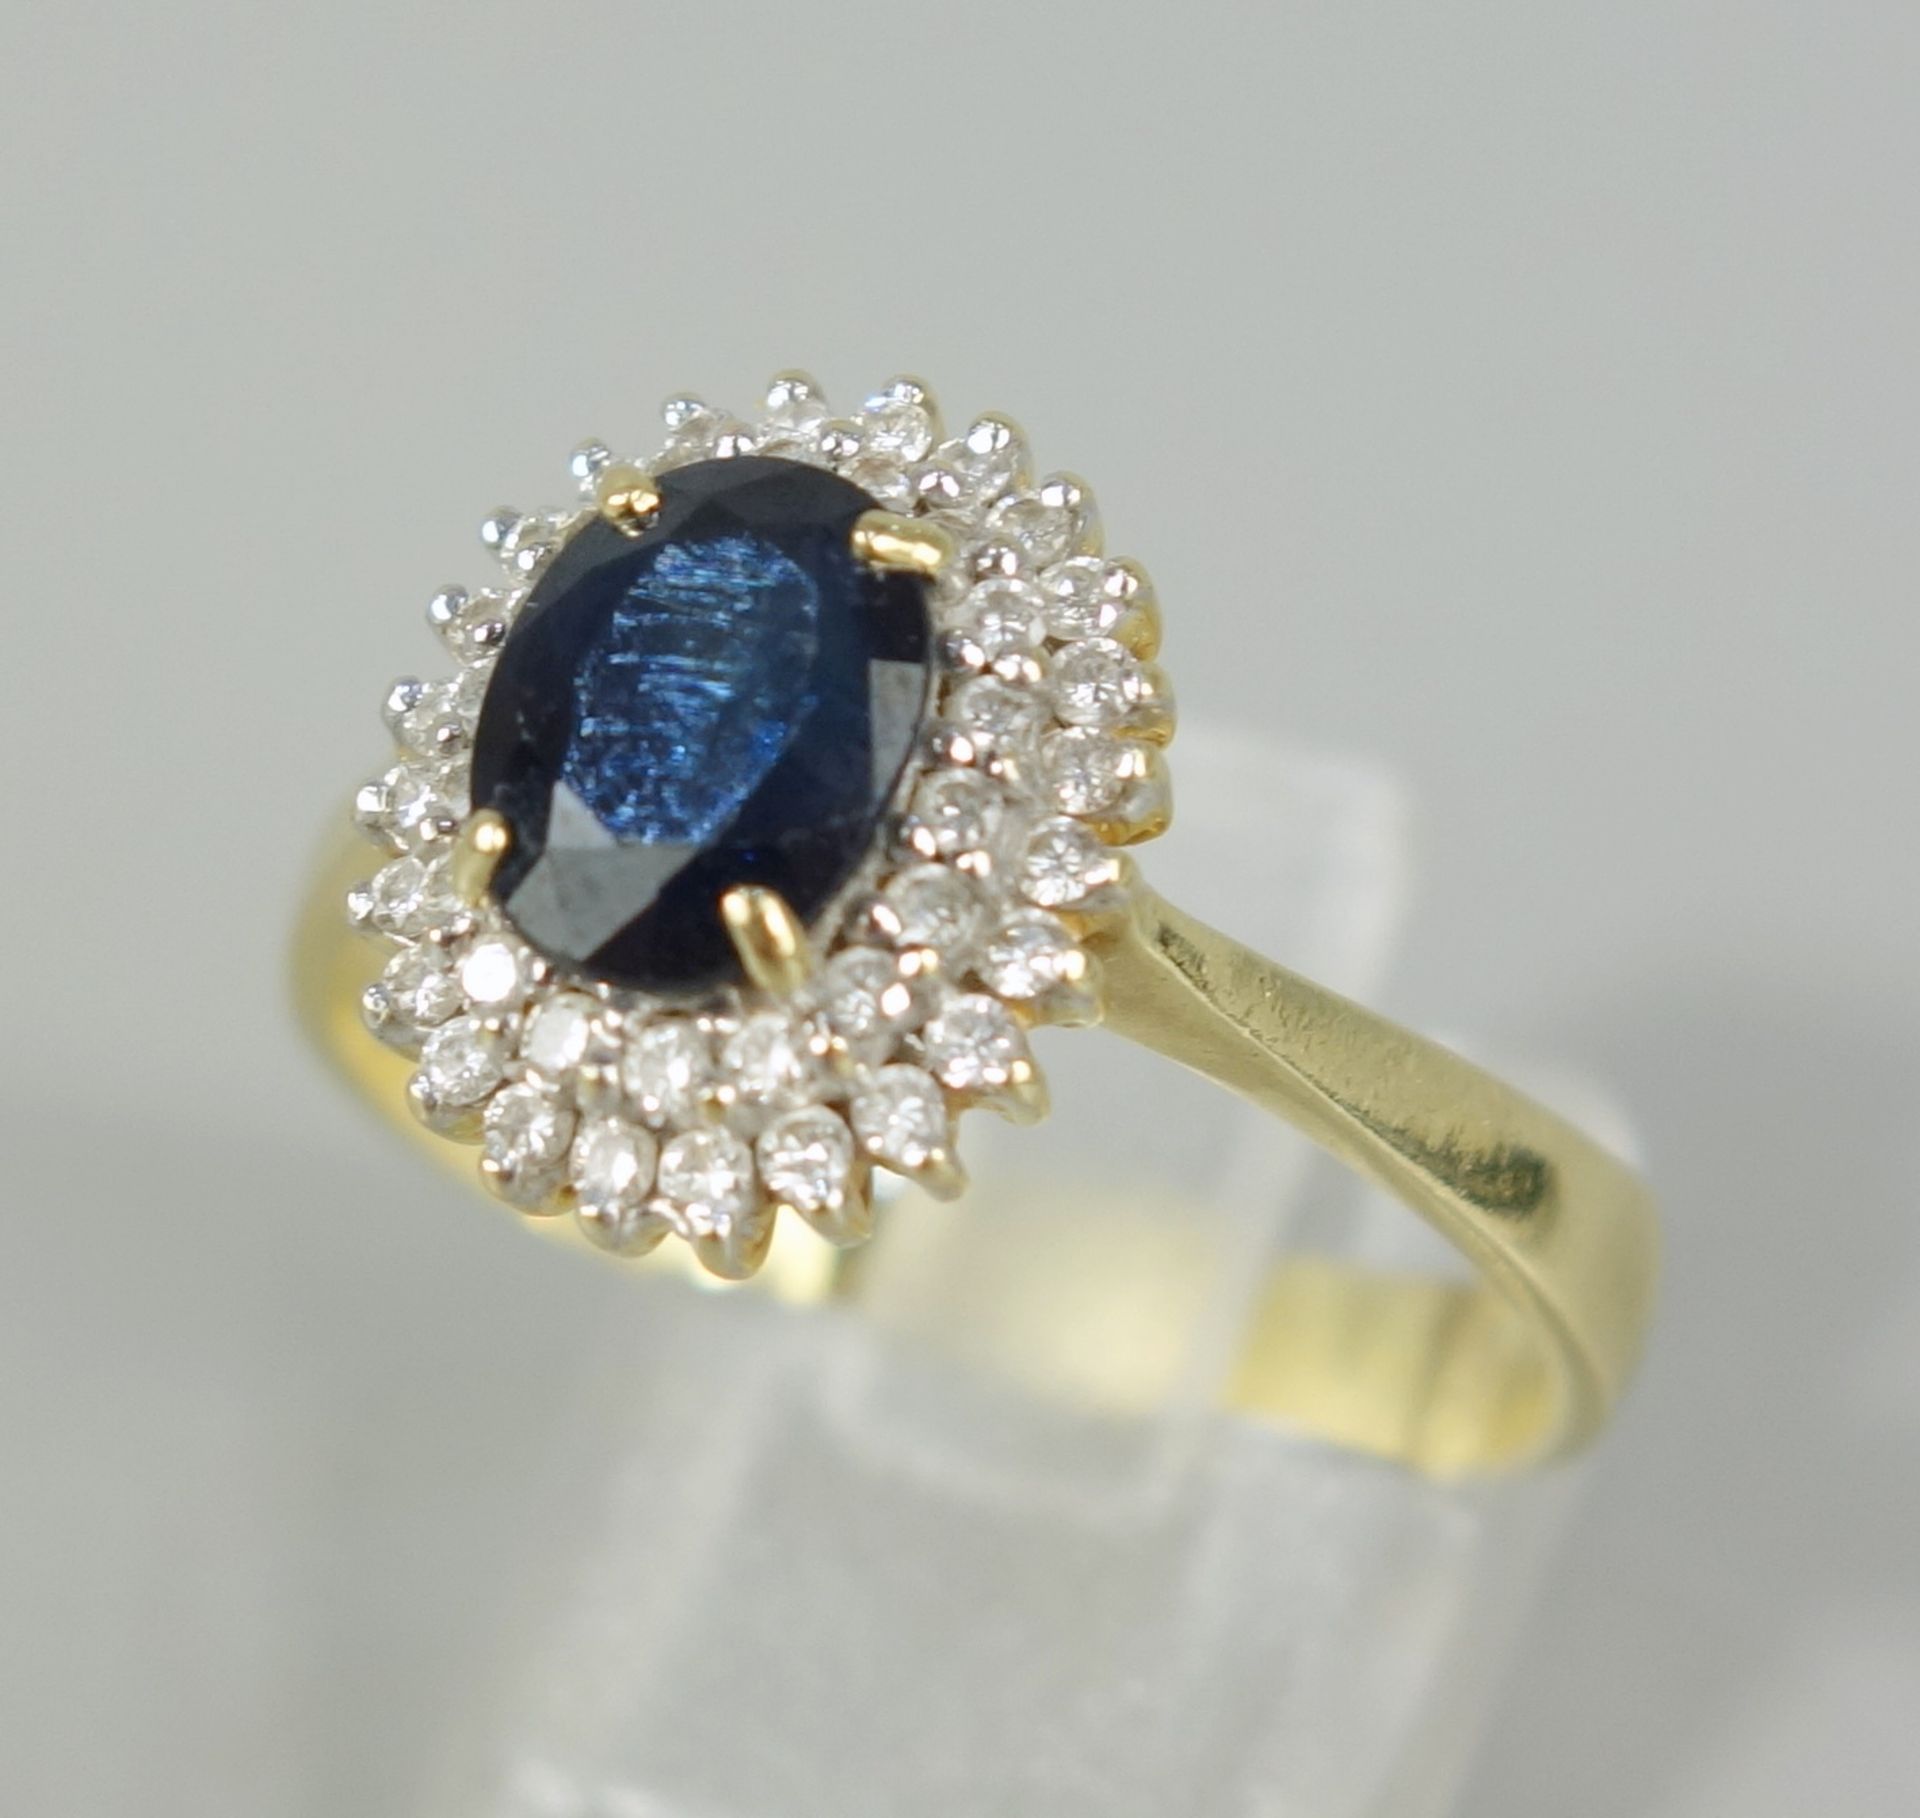 Saphir-Brillant-Ring, 750er Gold, Gew.5,36g, ovaler, facettierter Saphir, umrahmt von 44